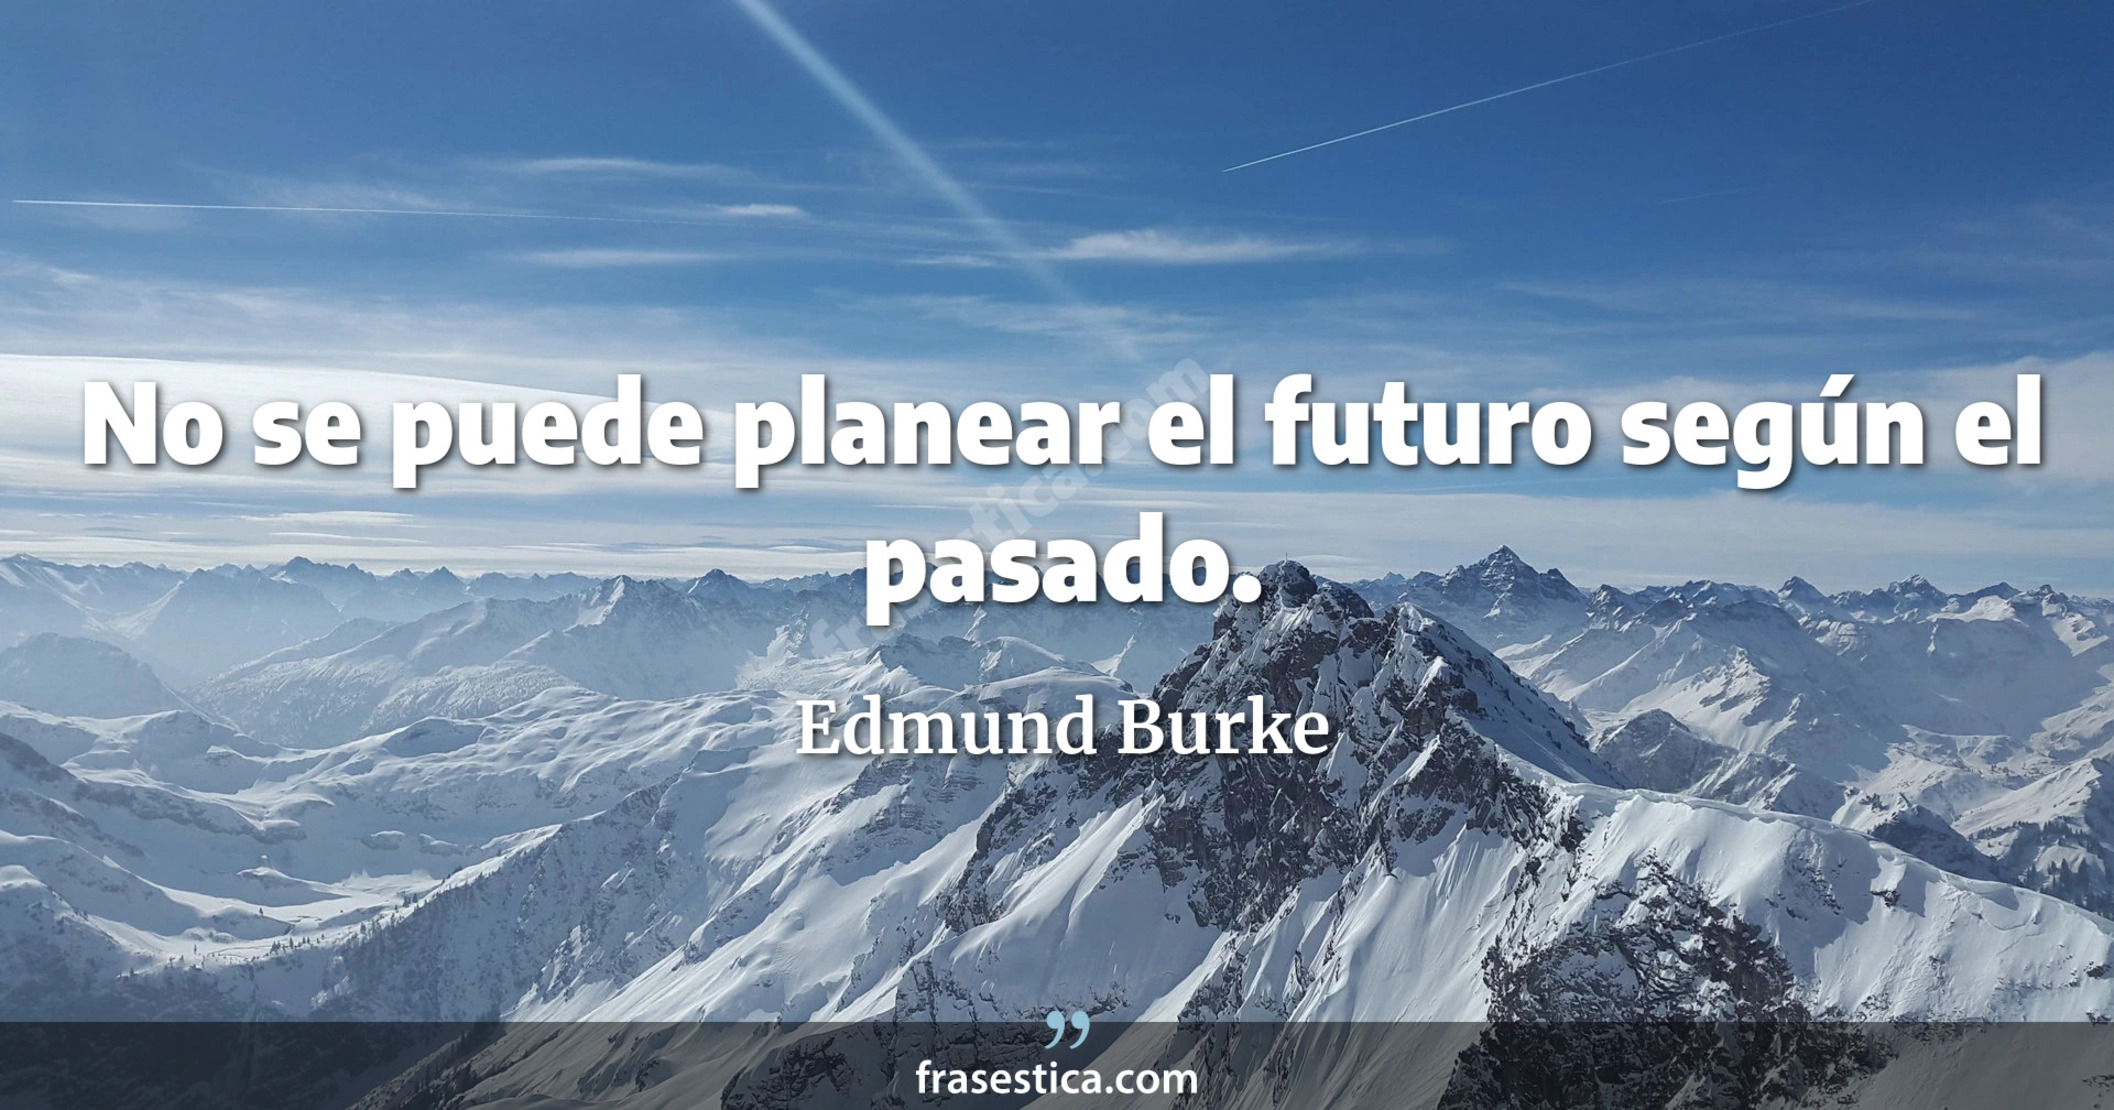 No se puede planear el futuro según el pasado. - Edmund Burke